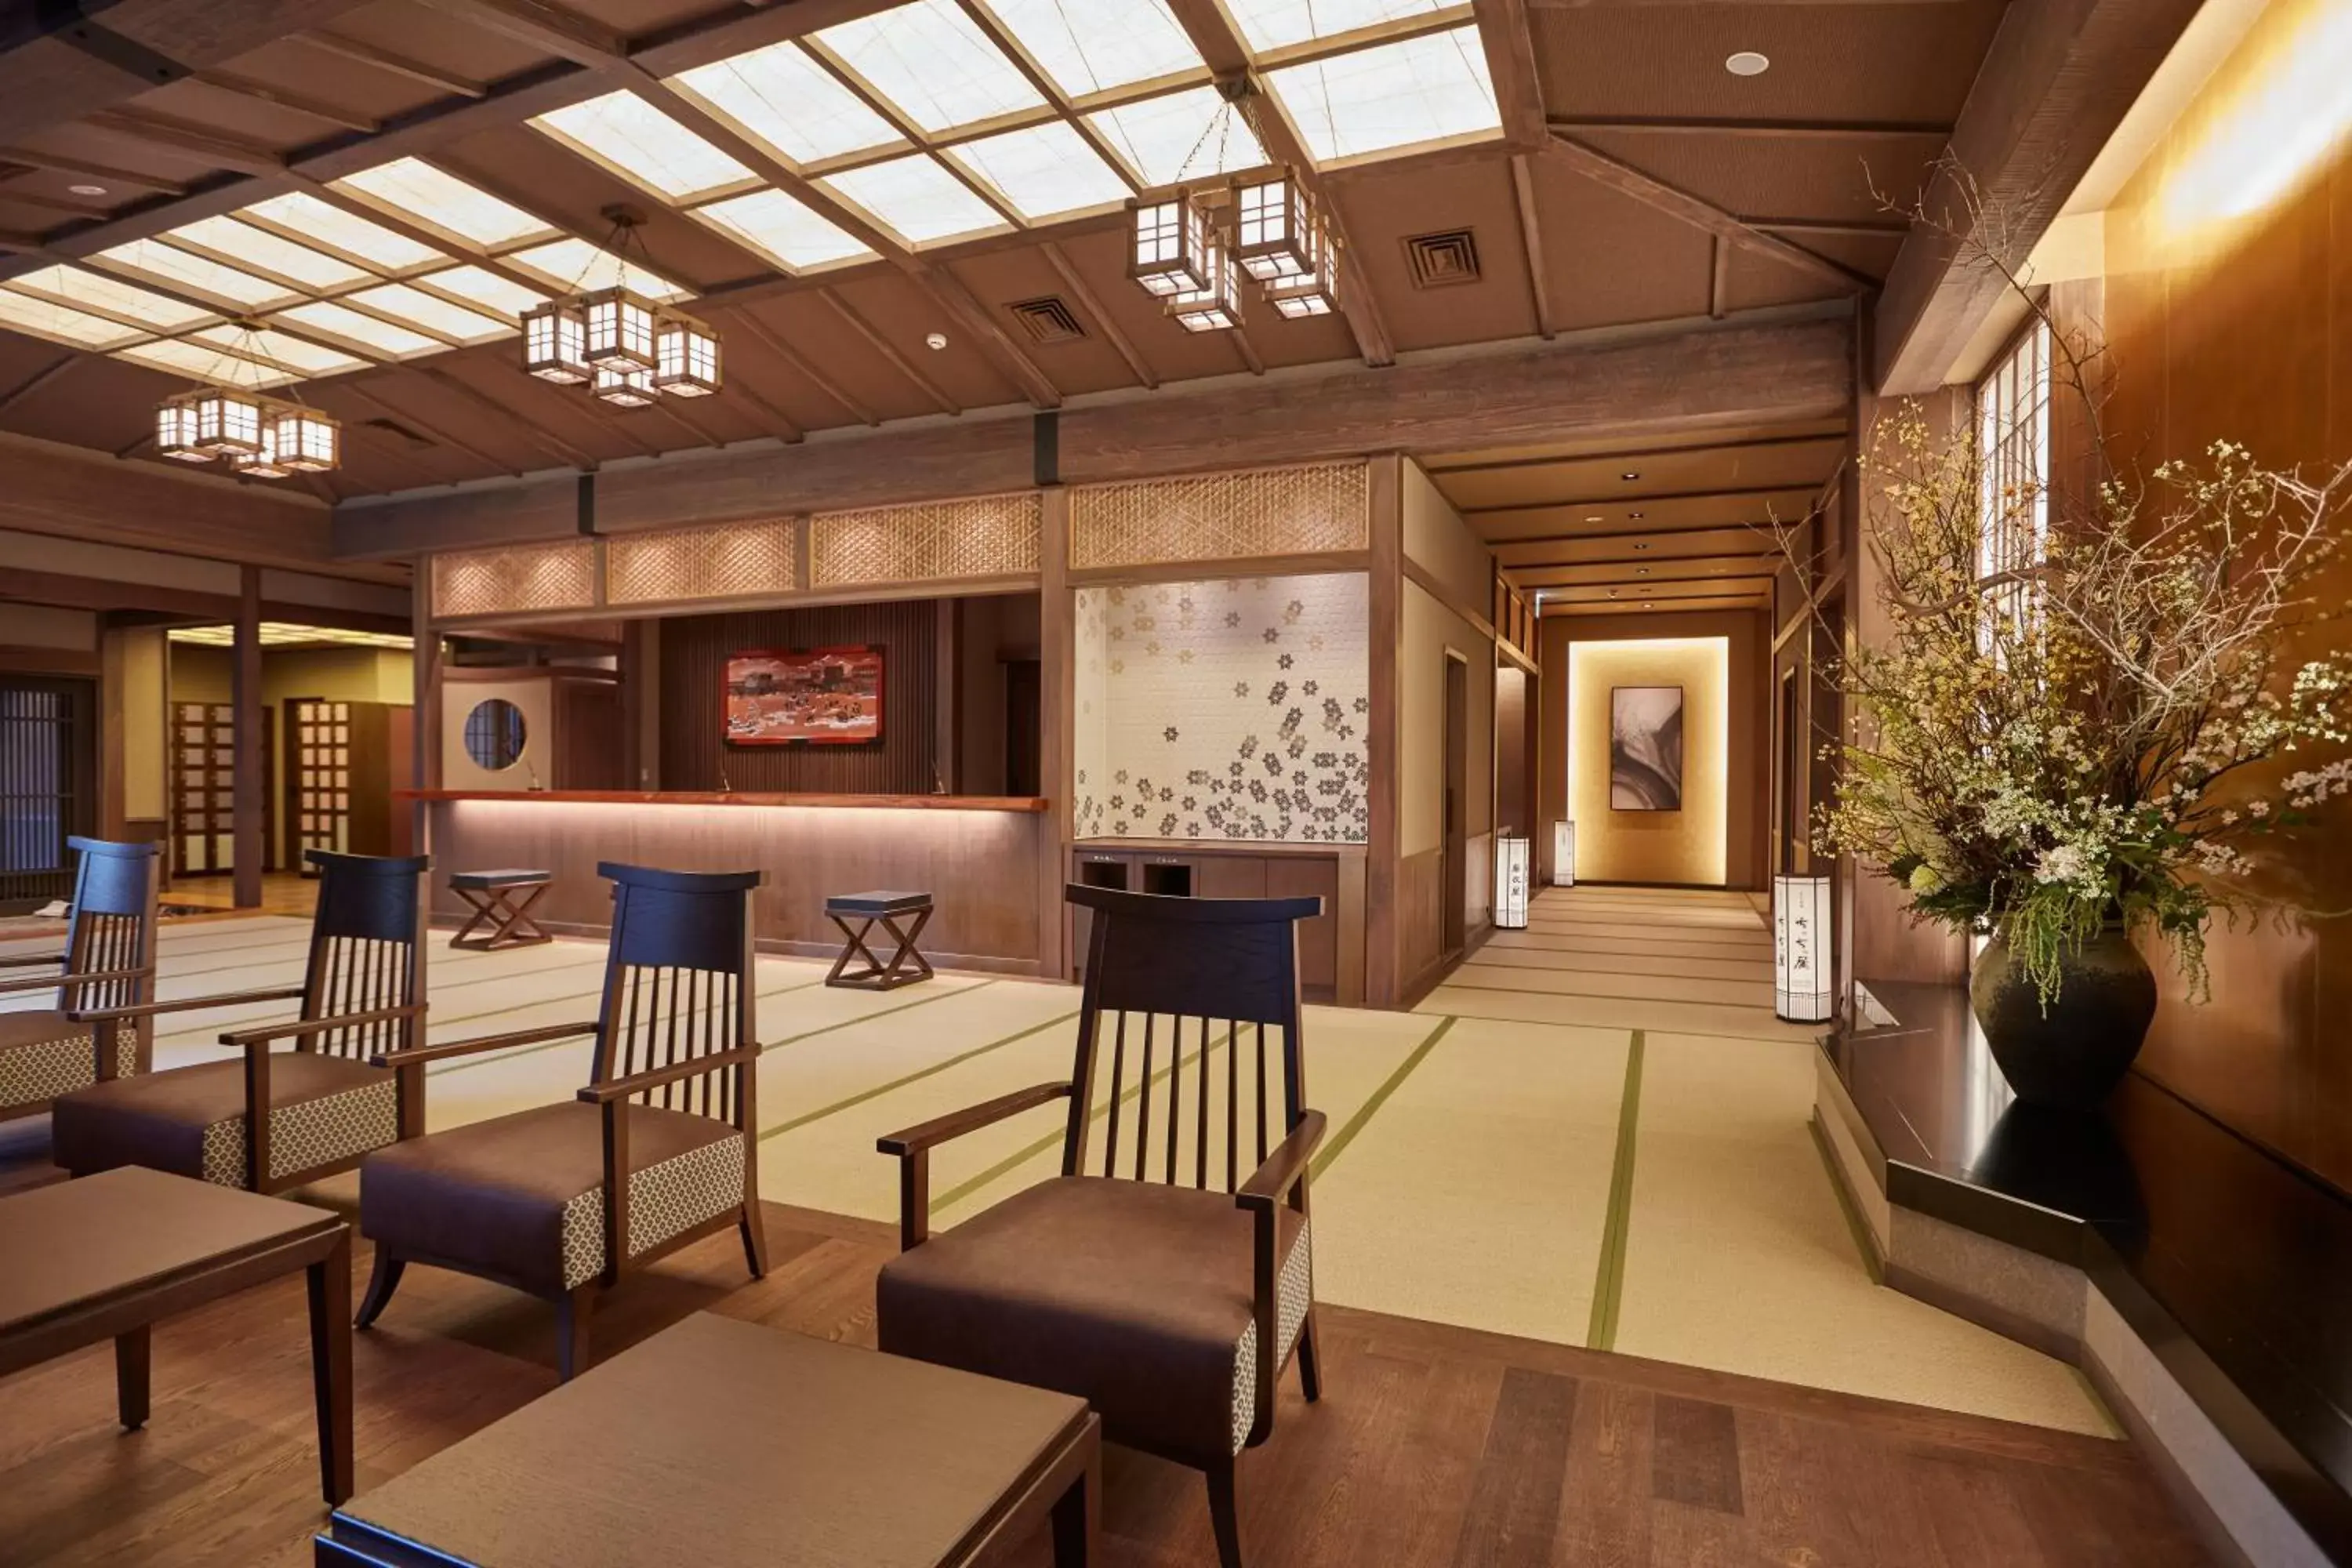 Lobby or reception in Yukinohana